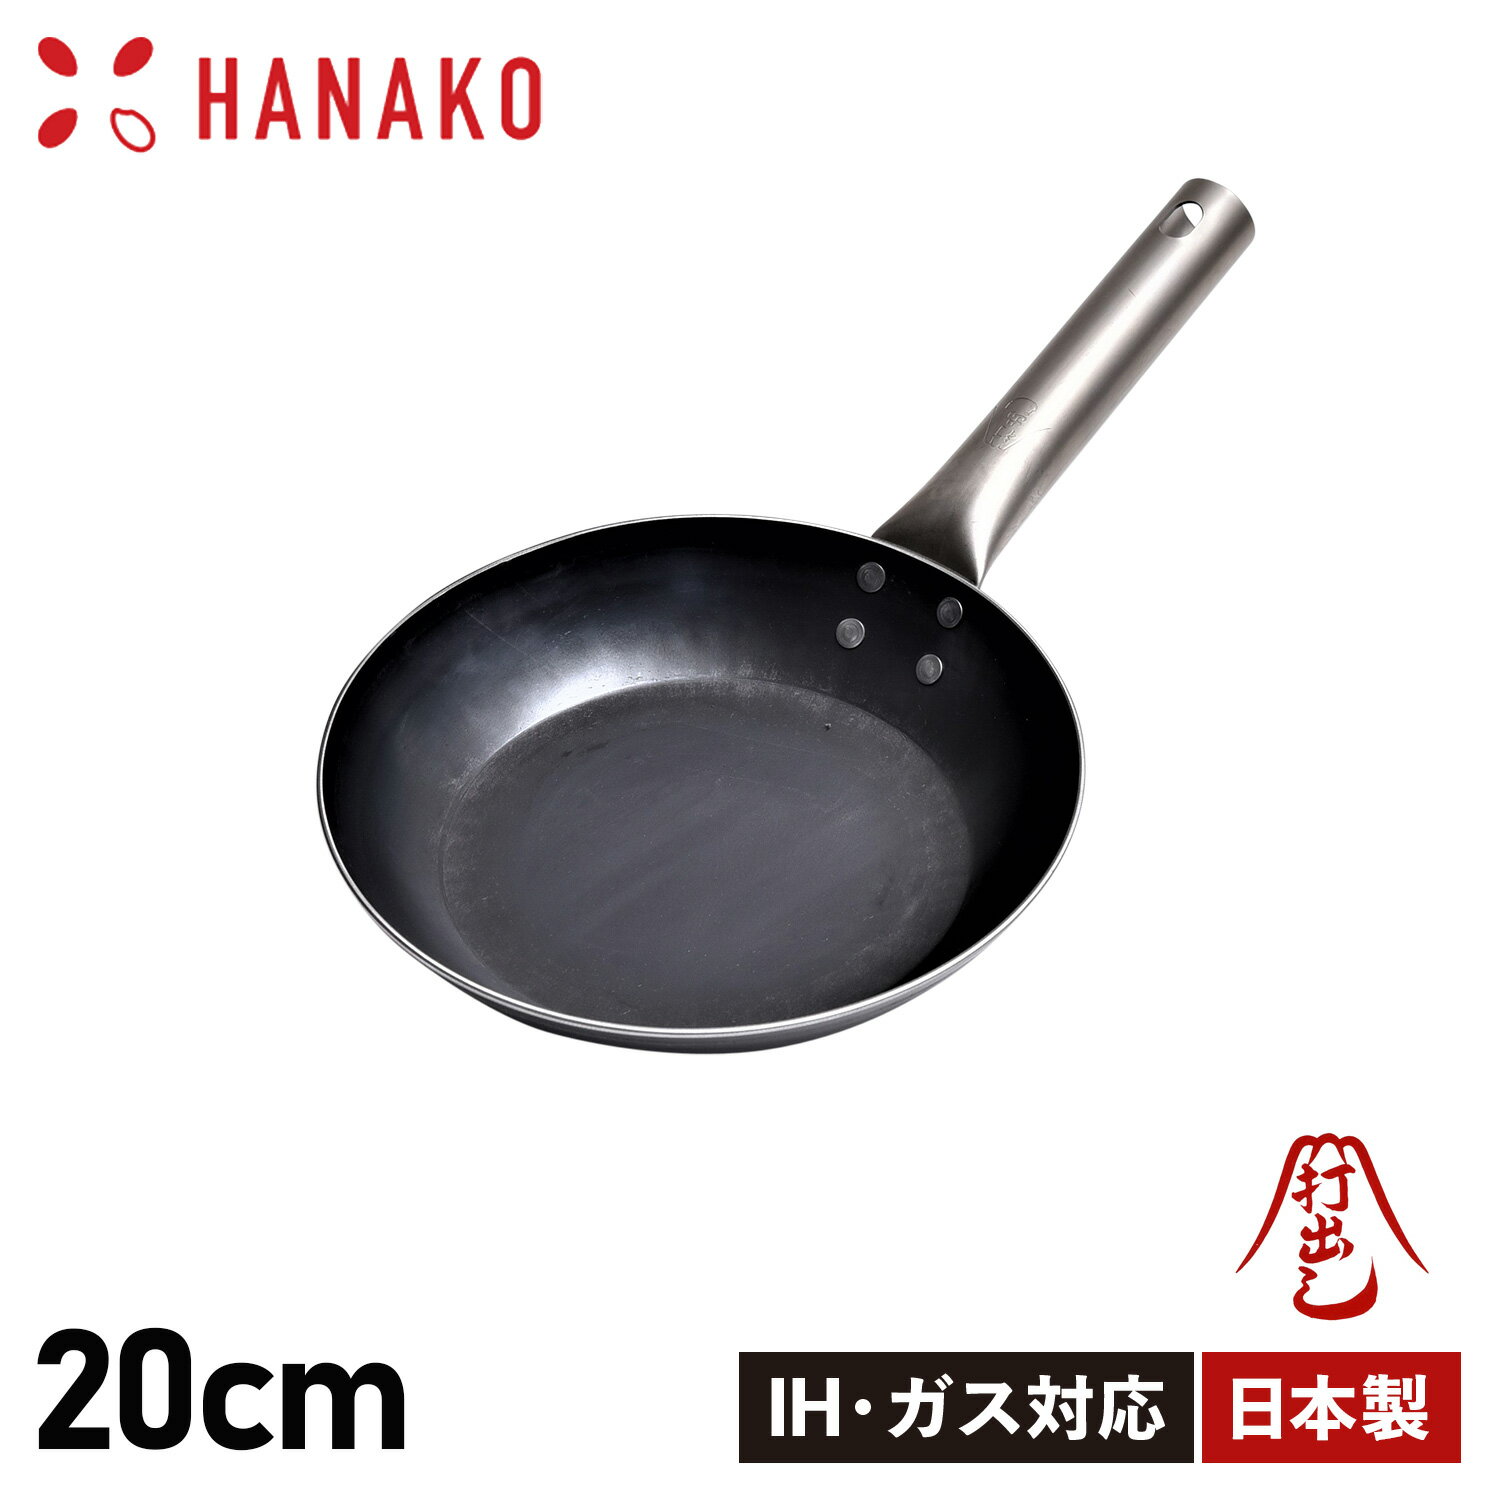 【最大1000円OFFクーポン配布中】 ハナコ HANAKO フライパン 20cm チタンハンドル 打ち出し製法 IH対応 TITANIUM HANDLE FRYING PAN HF-20